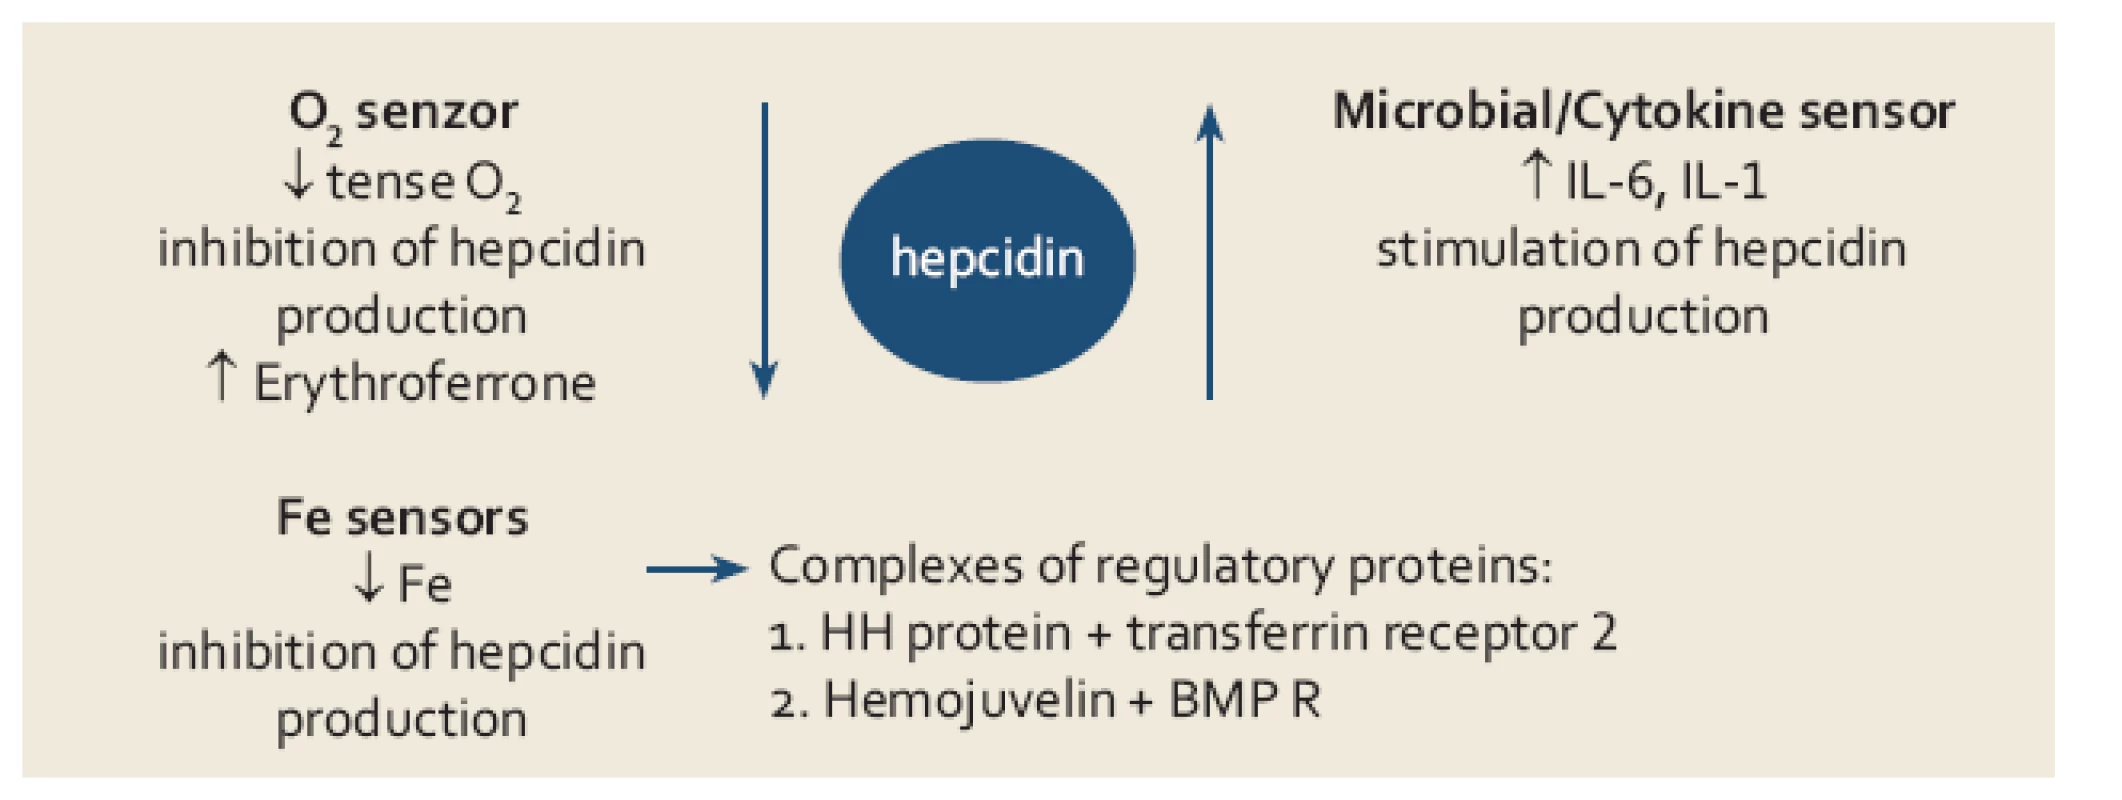 Přehled jednotlivých mechanizmů uplatňujících se v regulaci tvorby hepcidinu.
Fig. 2. Mechanisms involved in the regulation of hepcidin production.